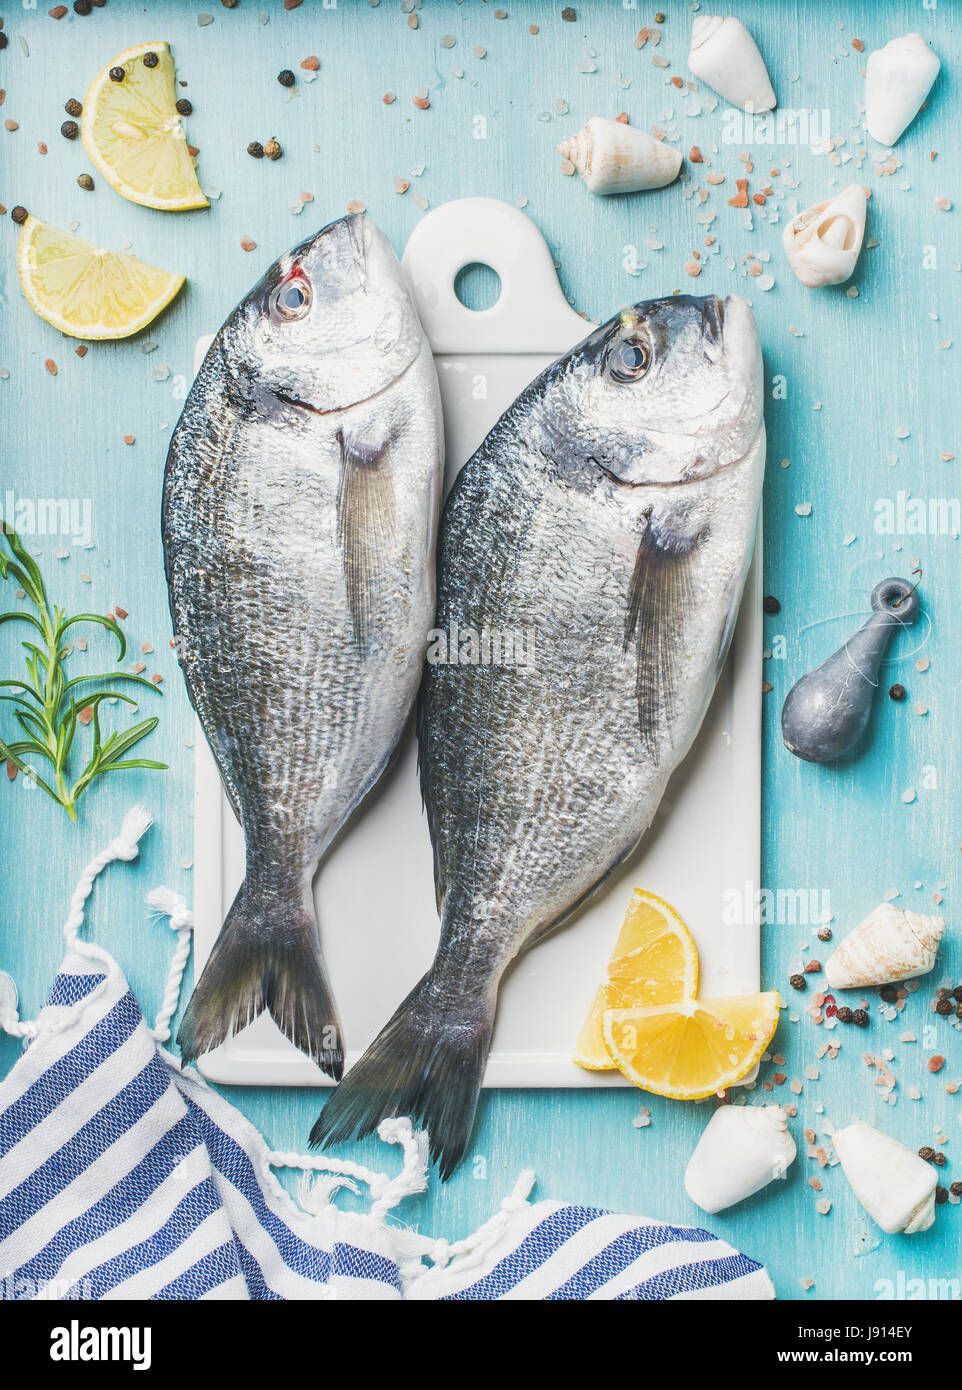 Frische Dorade oder Dorado rohen ungekochten Fisch mit Gewürzen Stockfoto